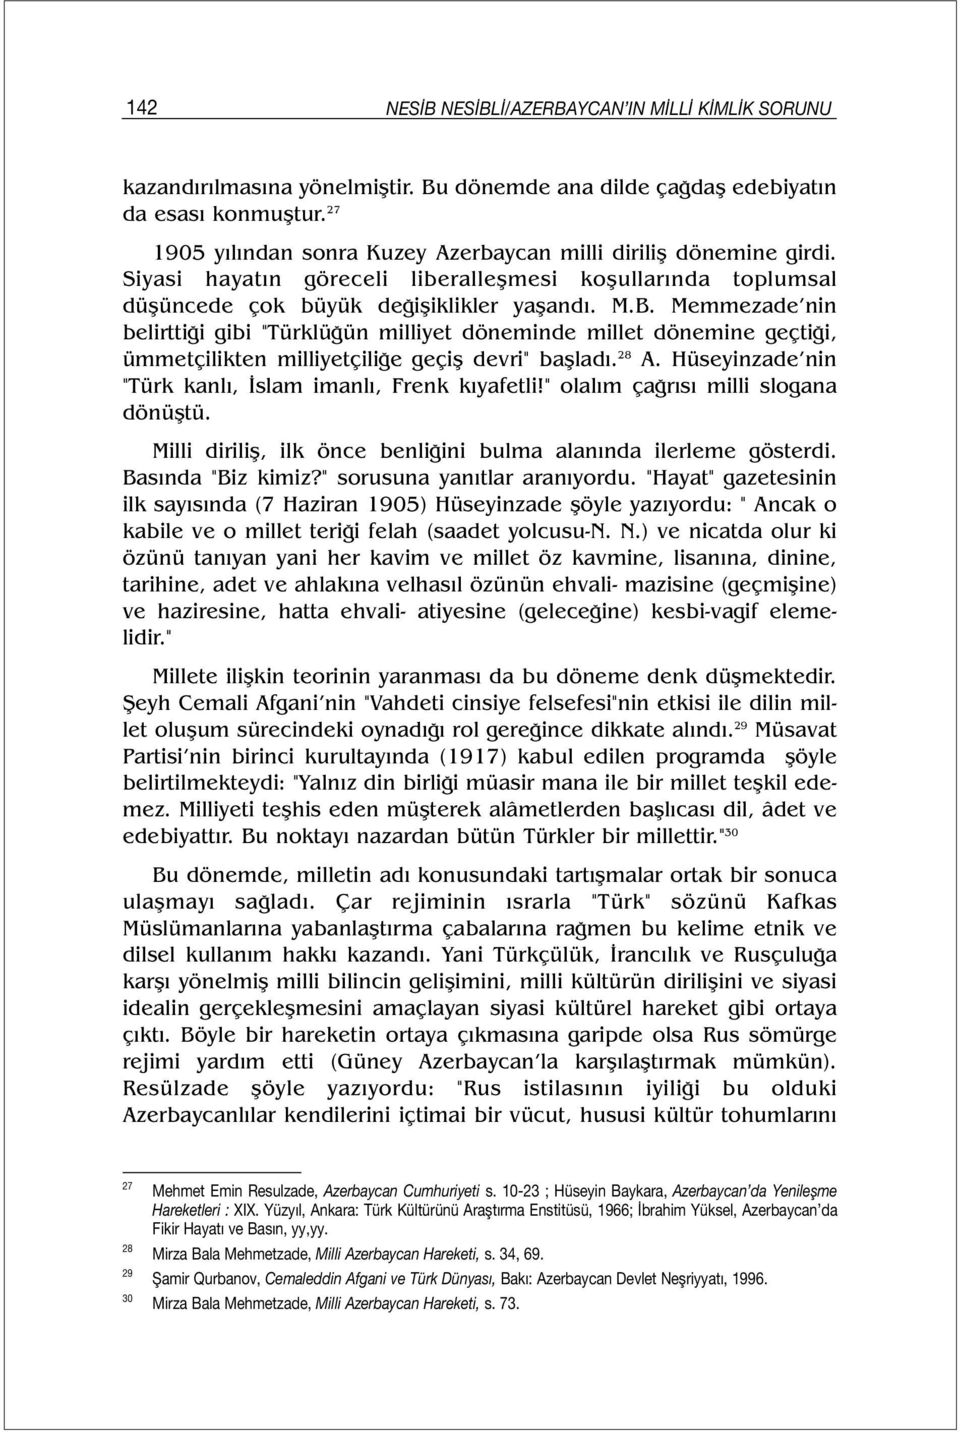 Memmezade nin belirttiği gibi "Türklüğün milliyet döneminde millet dönemine geçtiği, ümmetçilikten milliyetçiliğe geçiş devri" başladı. 28 A.